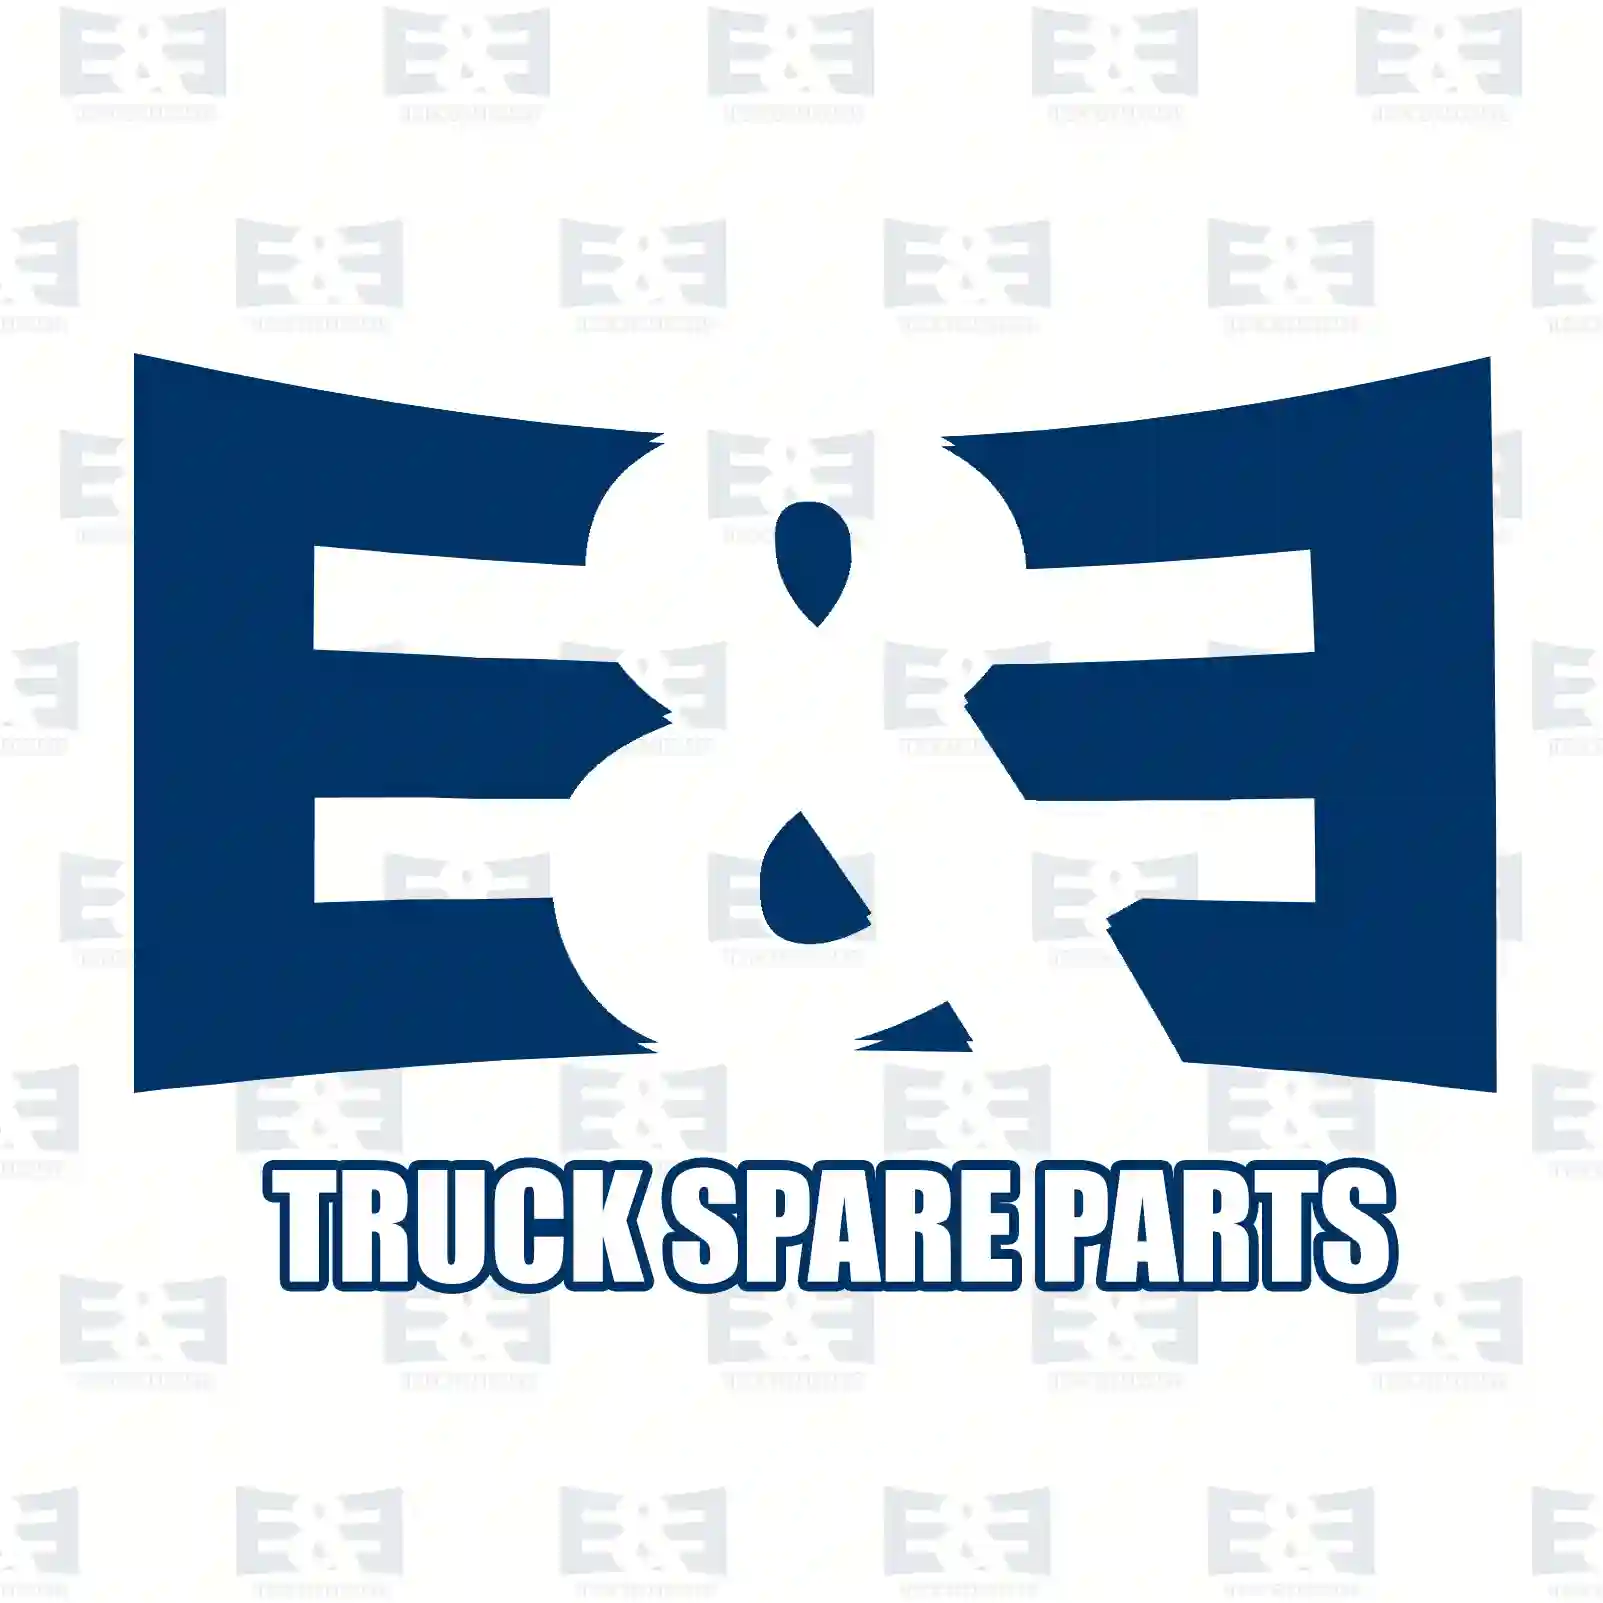 Double drive shaft, right, 2E2270339, 6253309601 ||  2E2270339 E&E Truck Spare Parts | Truck Spare Parts, Auotomotive Spare Parts Double drive shaft, right, 2E2270339, 6253309601 ||  2E2270339 E&E Truck Spare Parts | Truck Spare Parts, Auotomotive Spare Parts